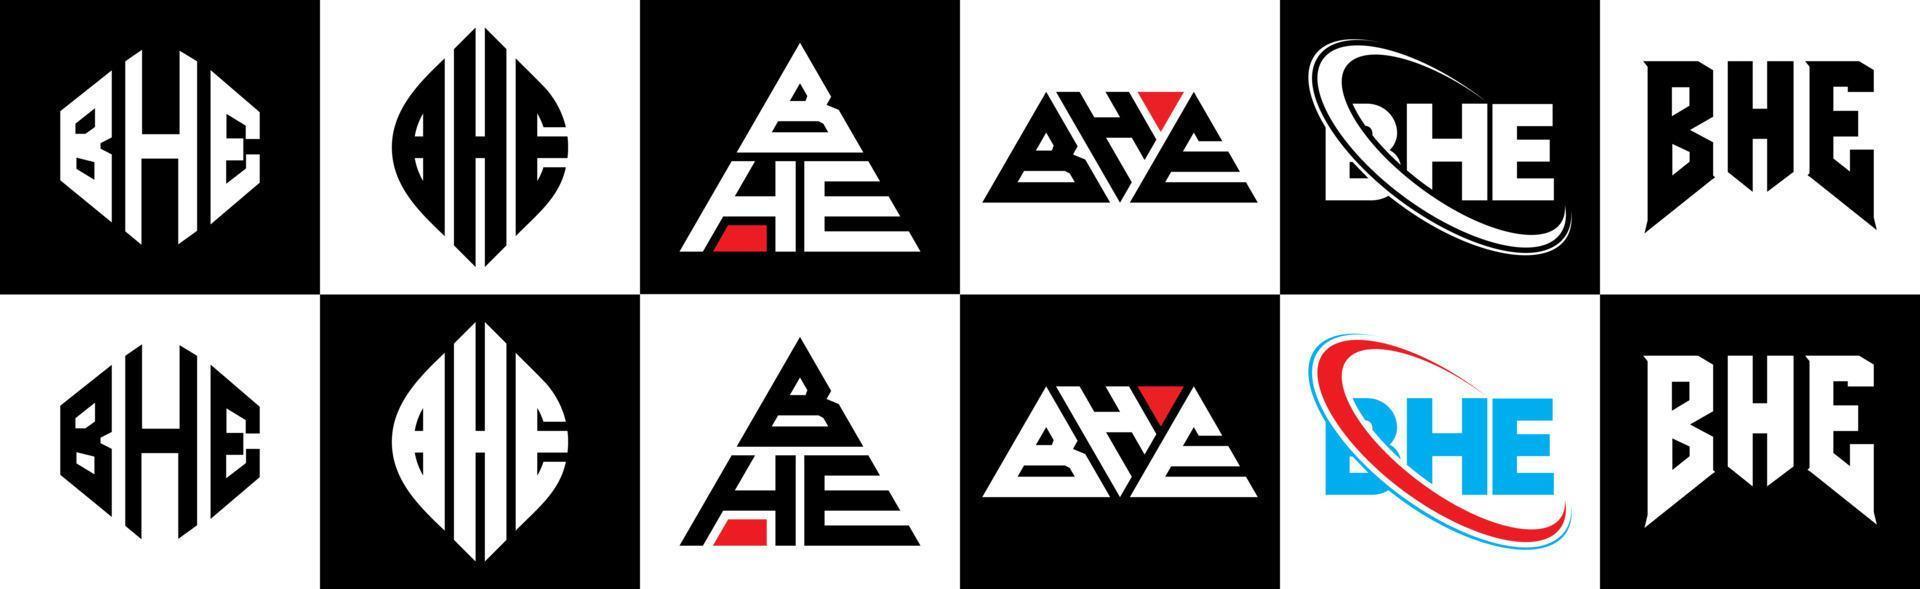 bhe-Buchstaben-Logo-Design in sechs Stilen. Das Polygon, Kreis, Dreieck, Sechseck, flacher und einfacher Stil mit schwarz-weißem Buchstabenlogo in einer Zeichenfläche. Das minimalistische und klassische Logo vektor